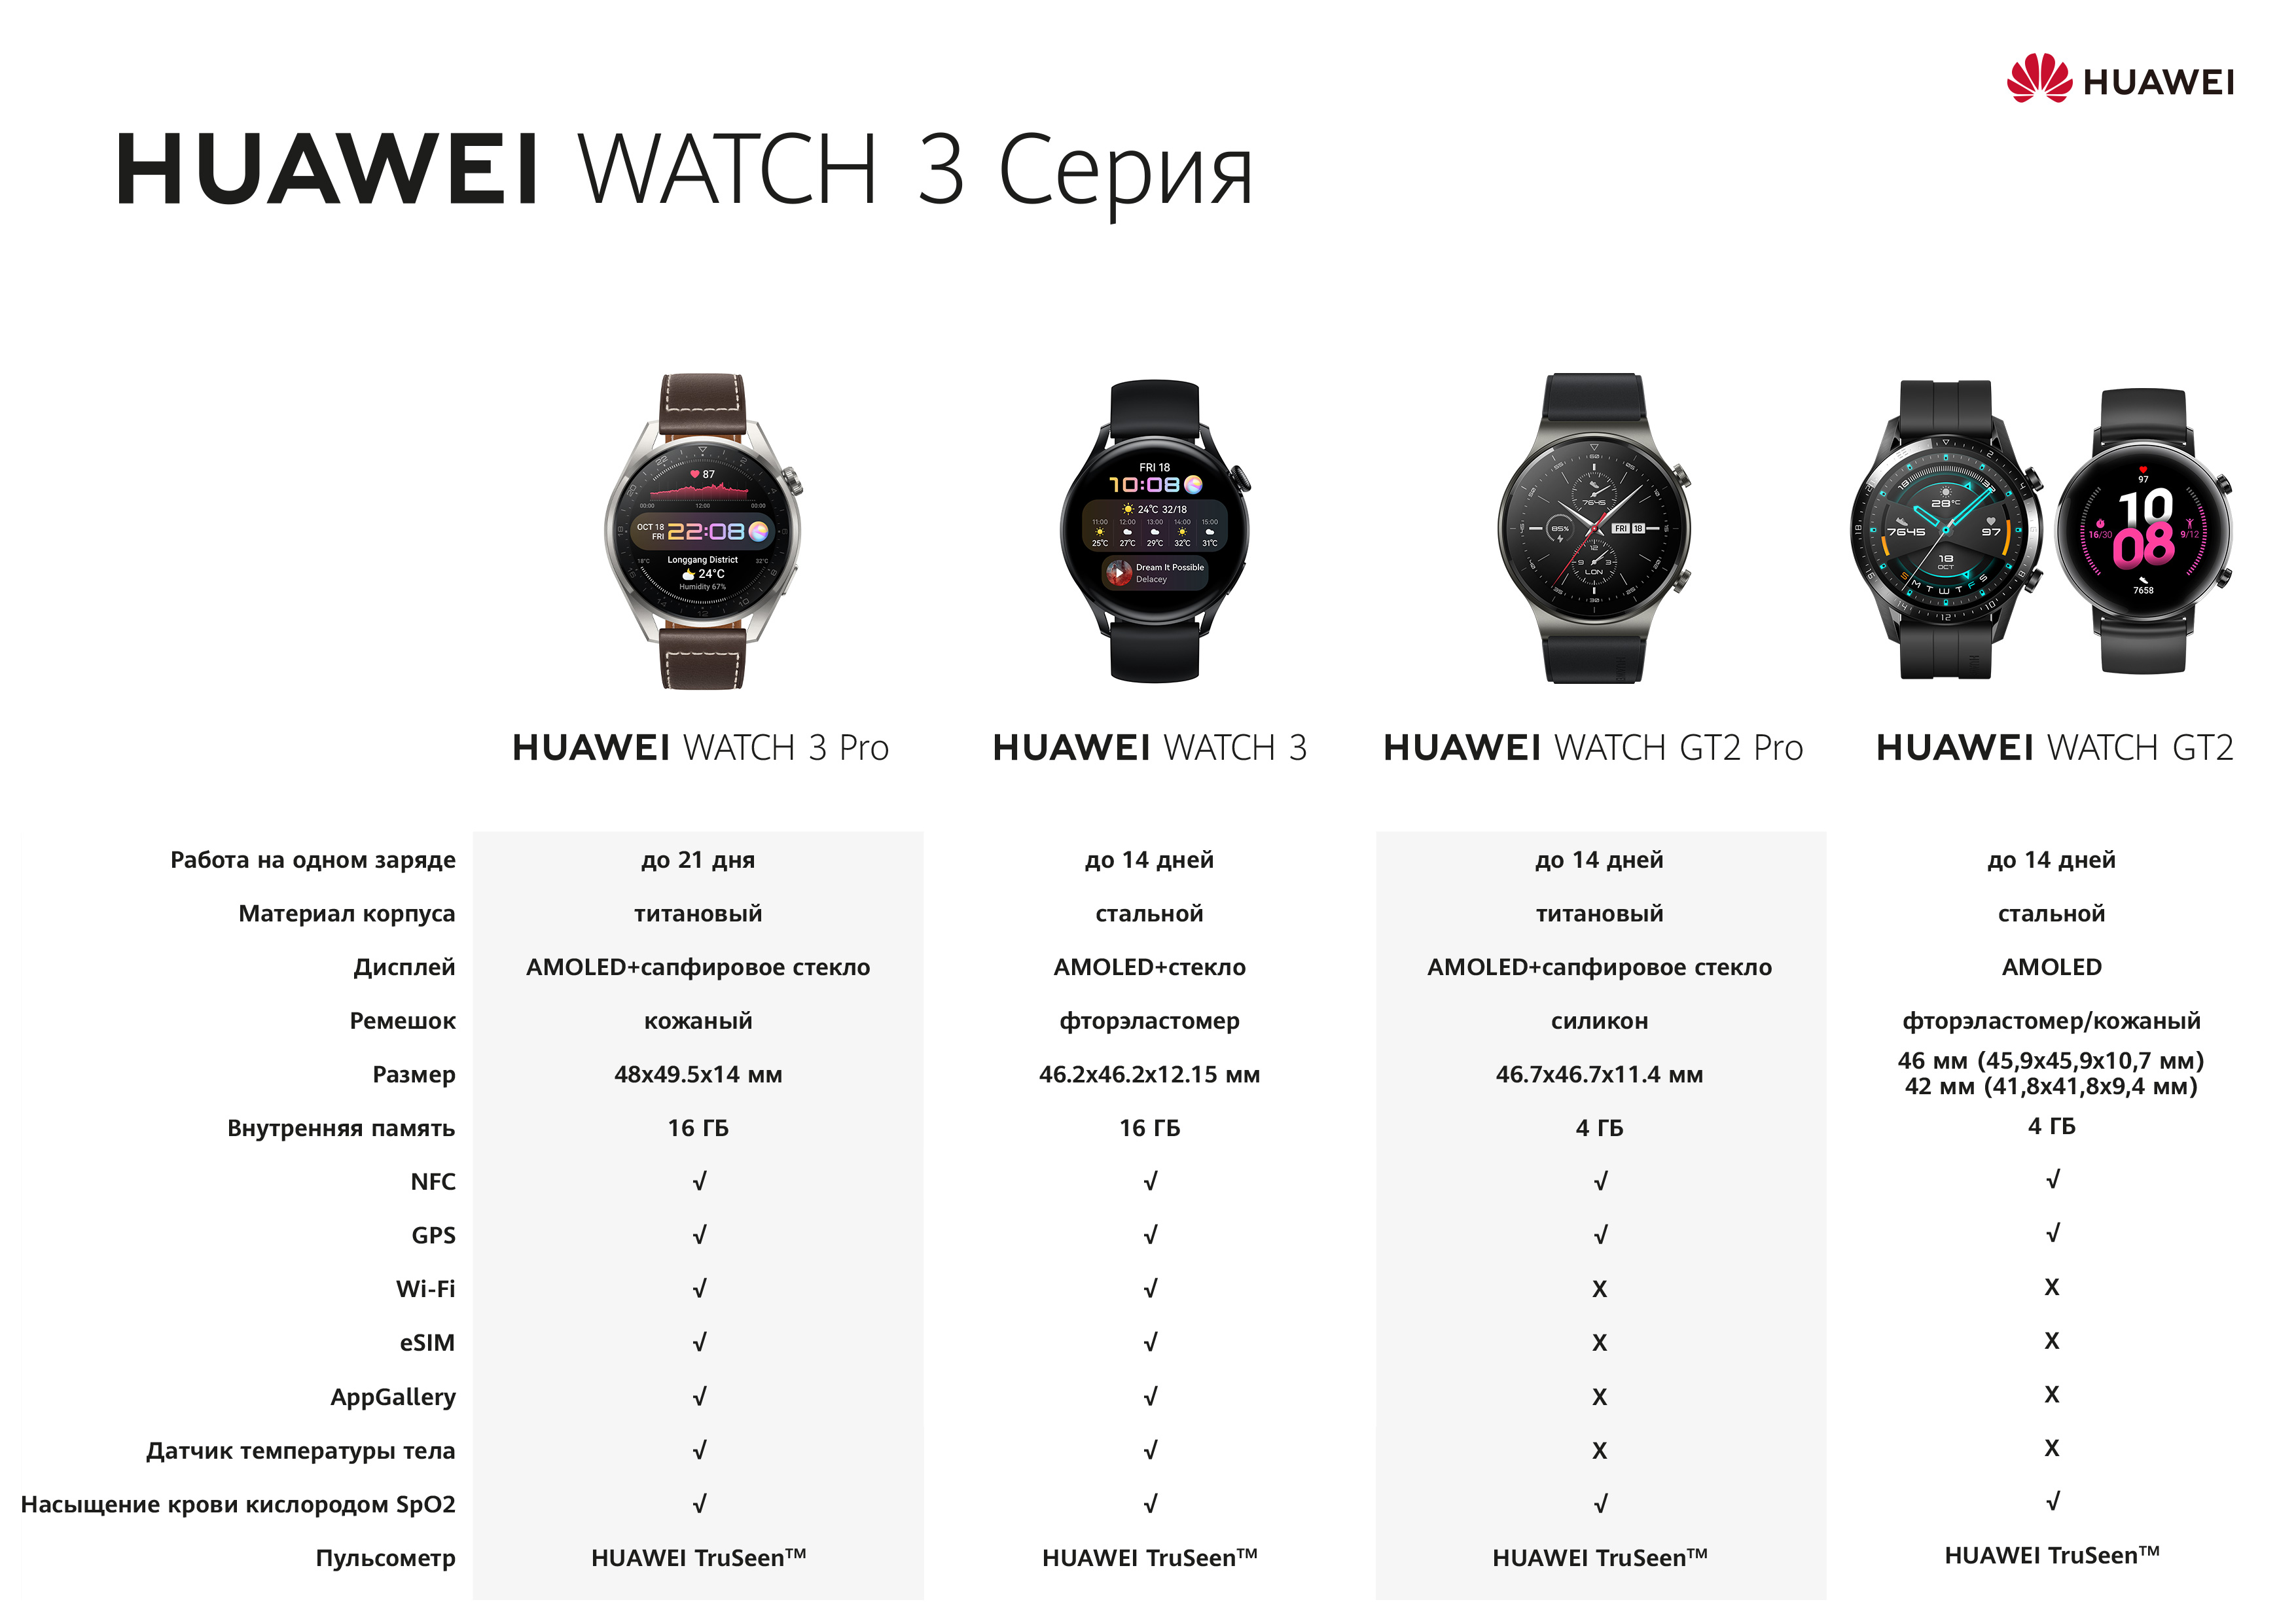 Huawei watch 3